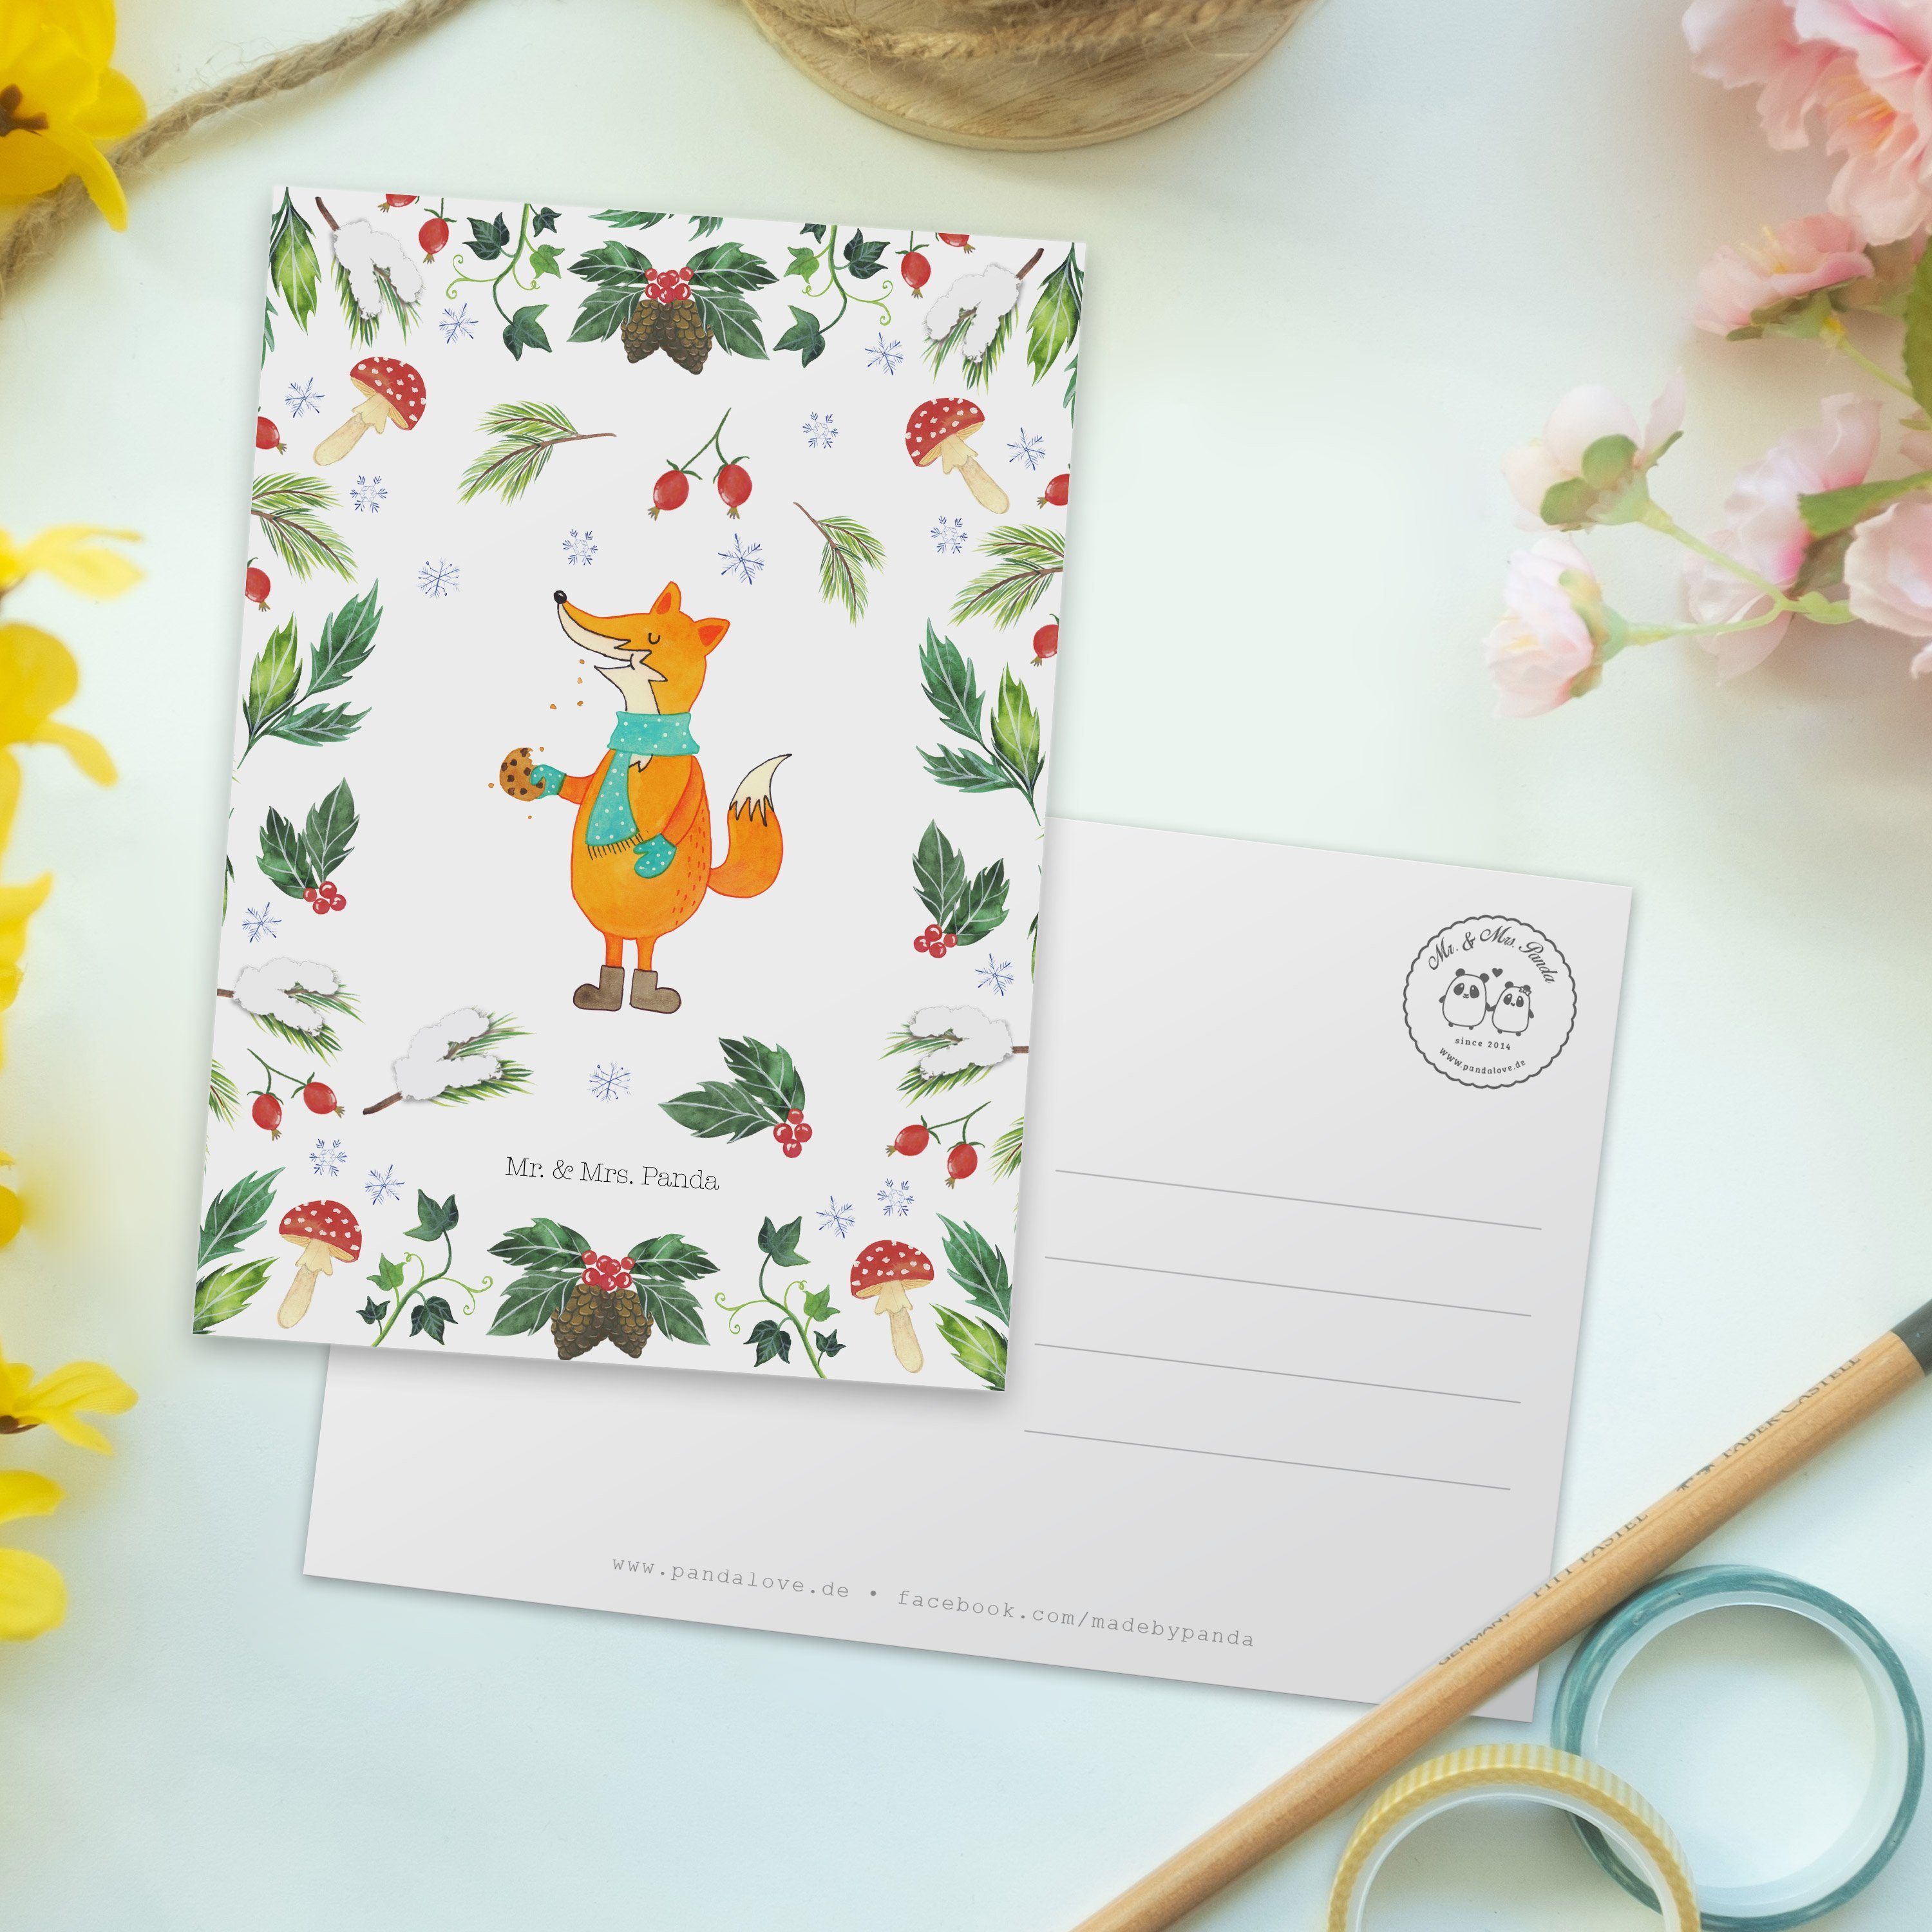 Mr. & - Weihnachtsdeko, - Geburtst Geschenk, Mrs. Panda Weiß Fuchs Keksdose Grußkarte, Postkarte